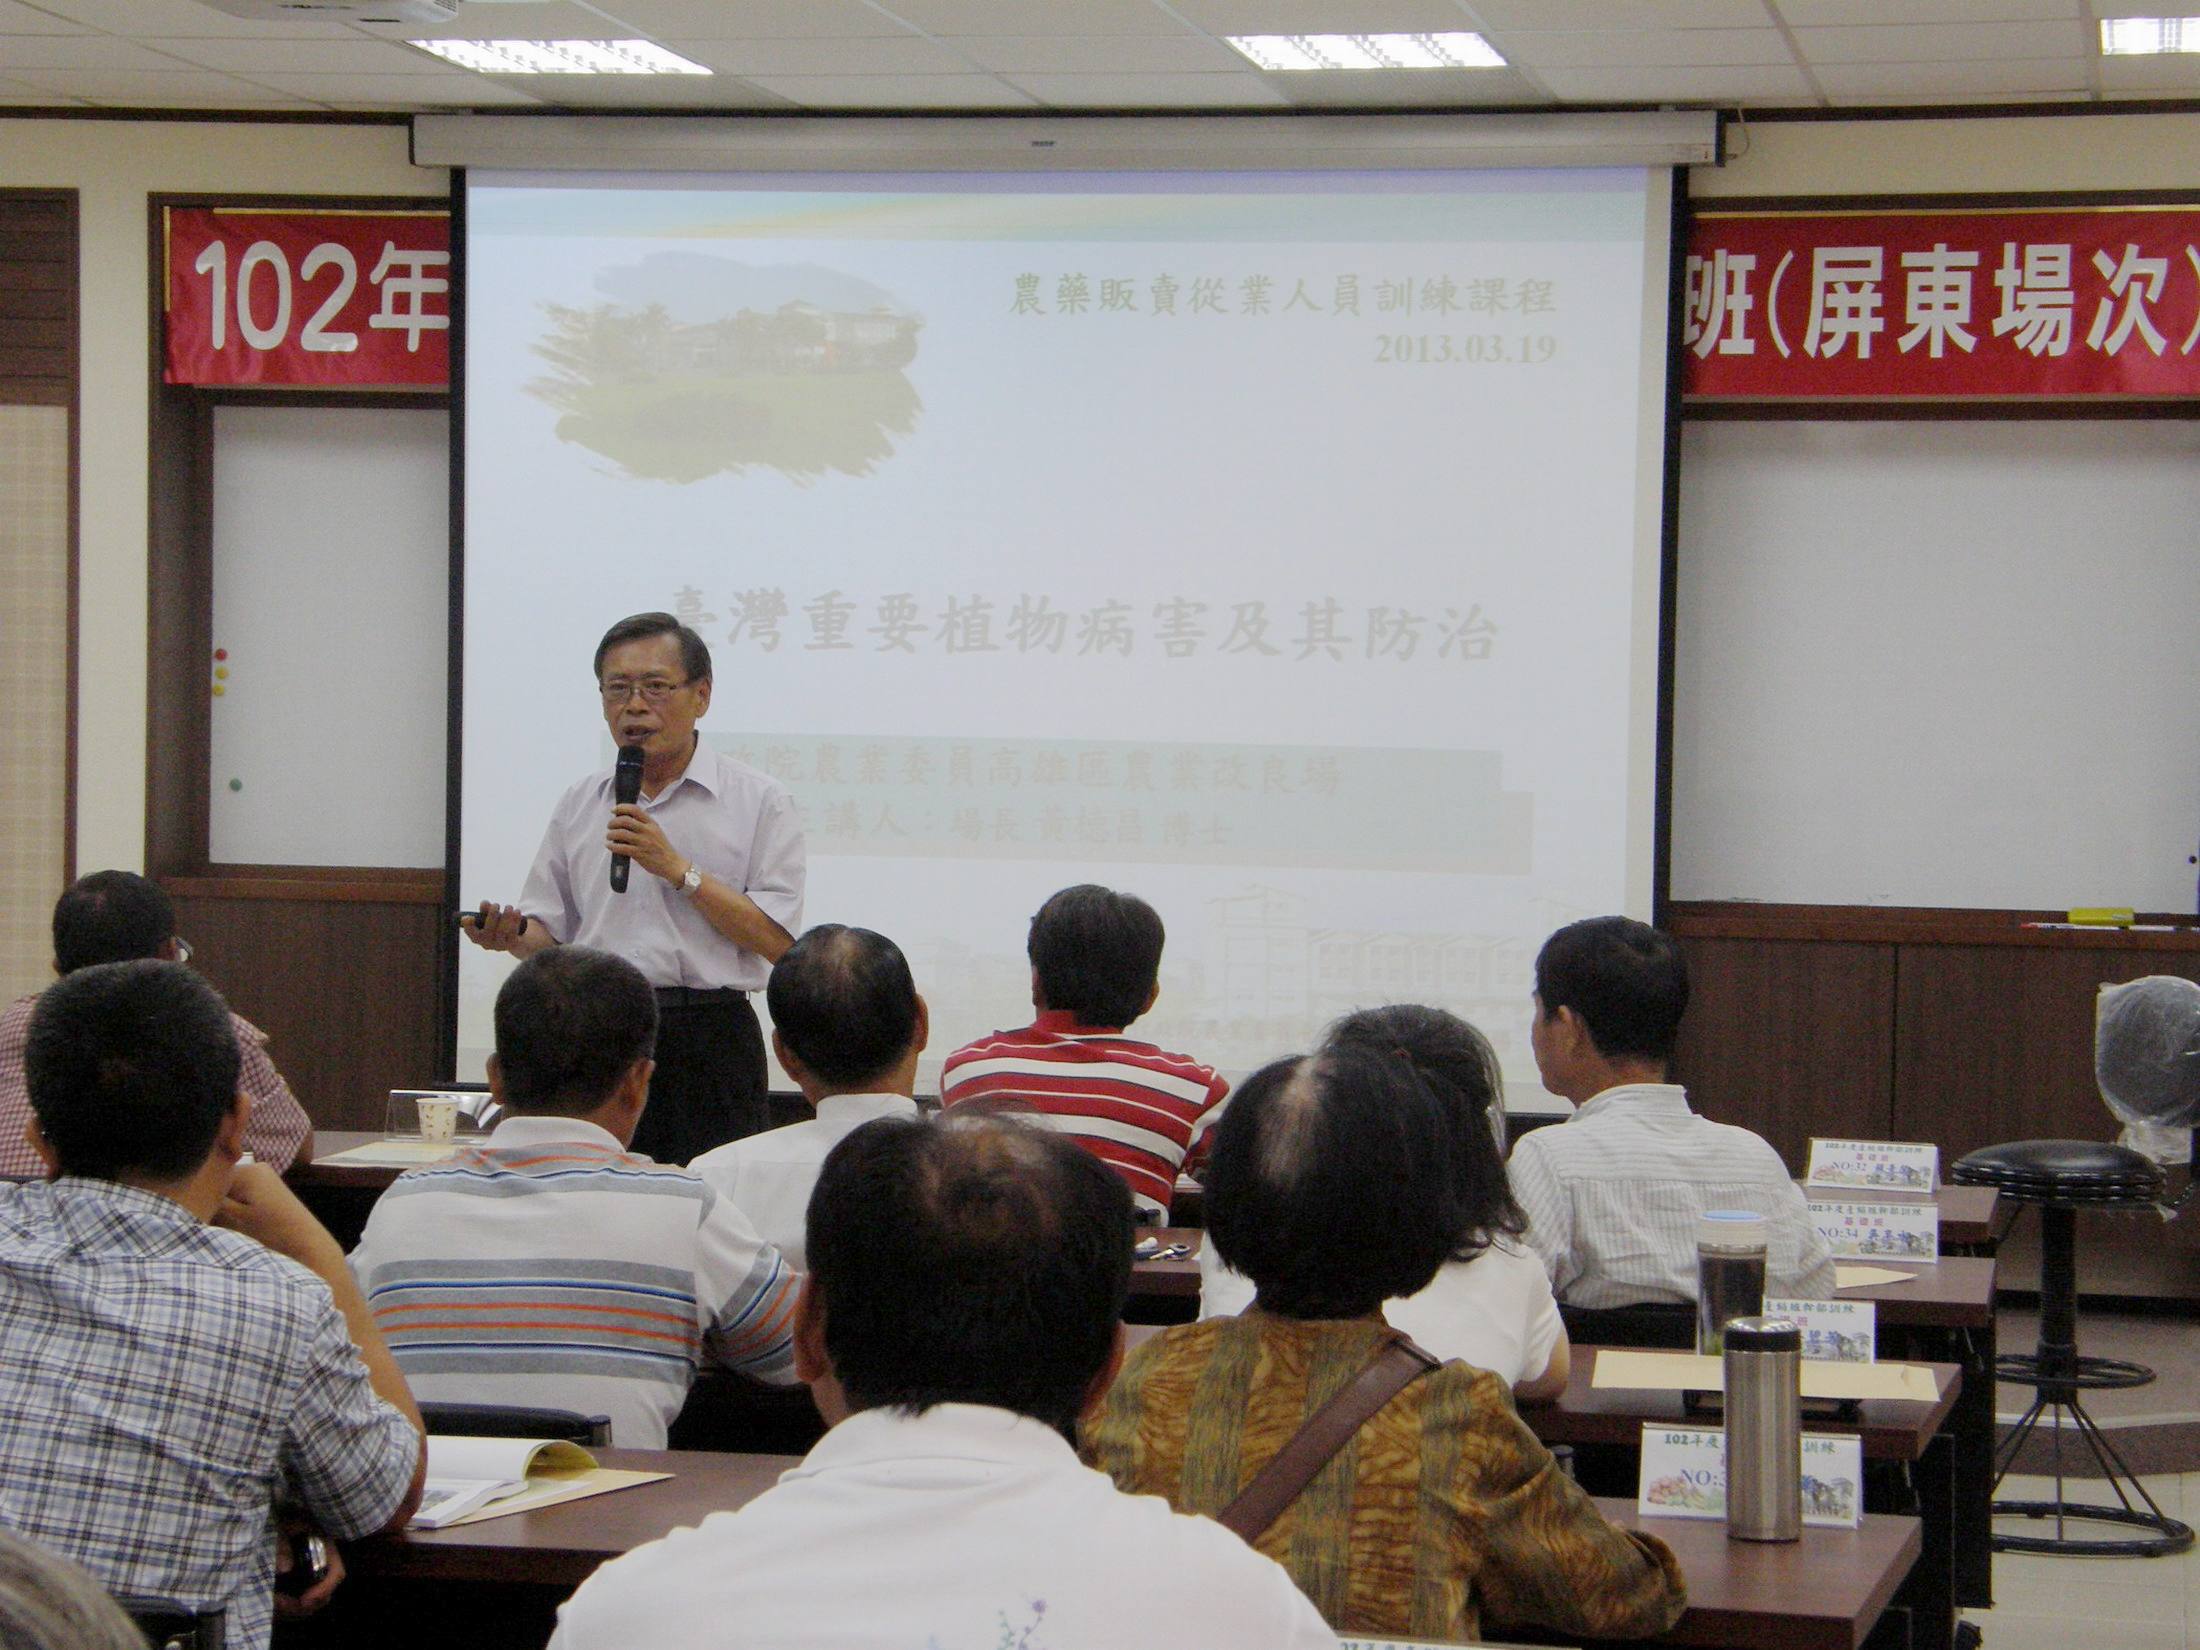 黃場長講授台灣重要植物病害及其防治